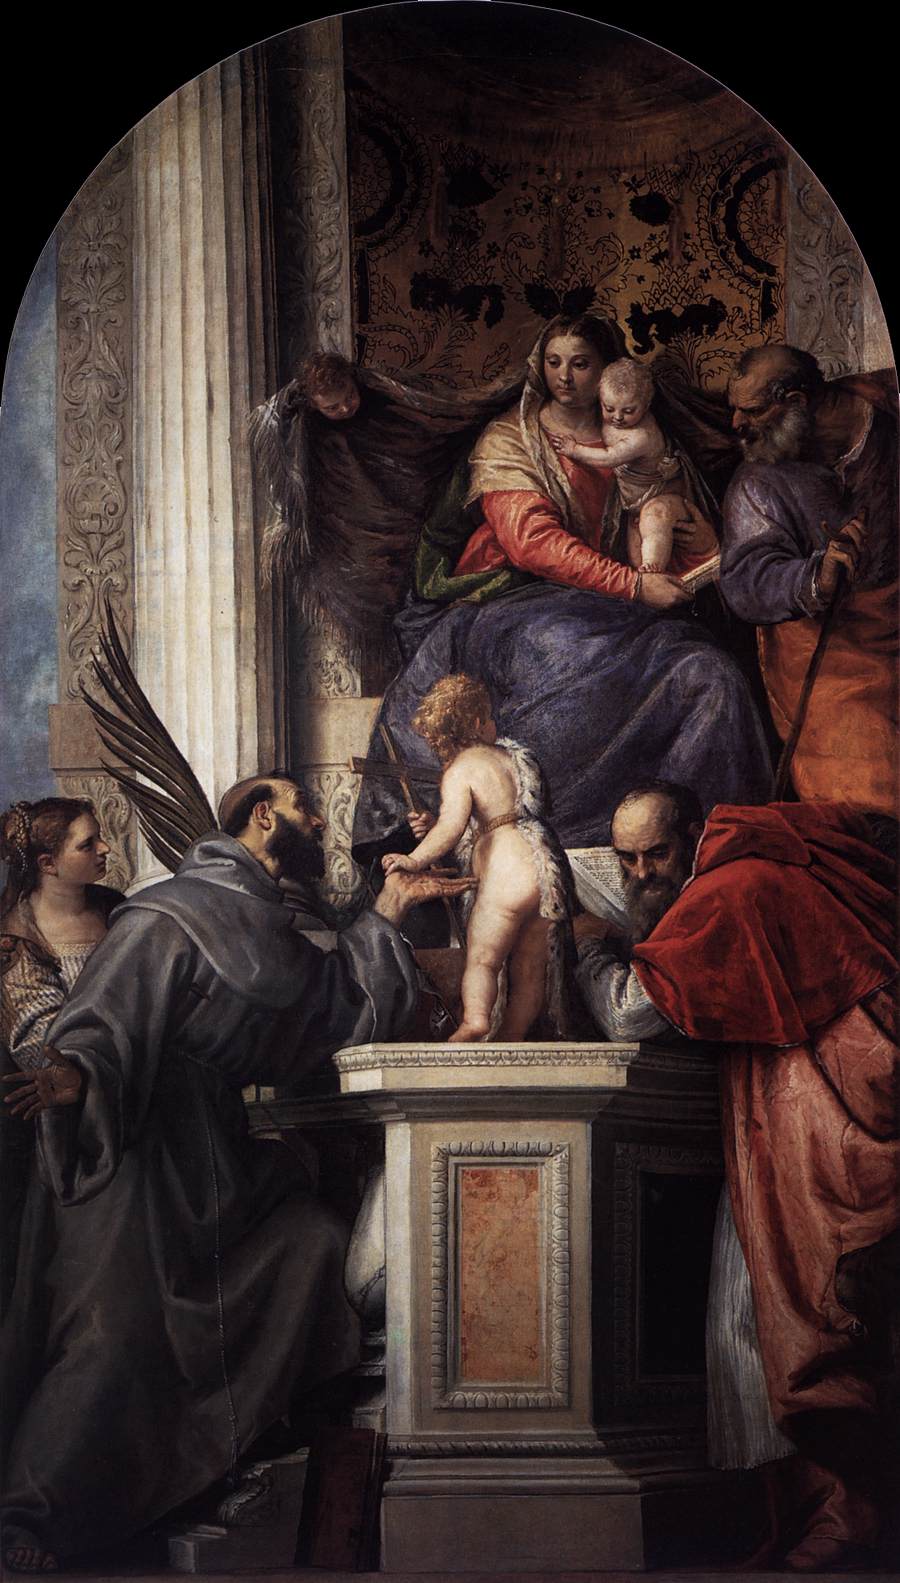 הבתולה התנשאה והילד, עם התינוק סן חואן באוטיסטה והקדושים